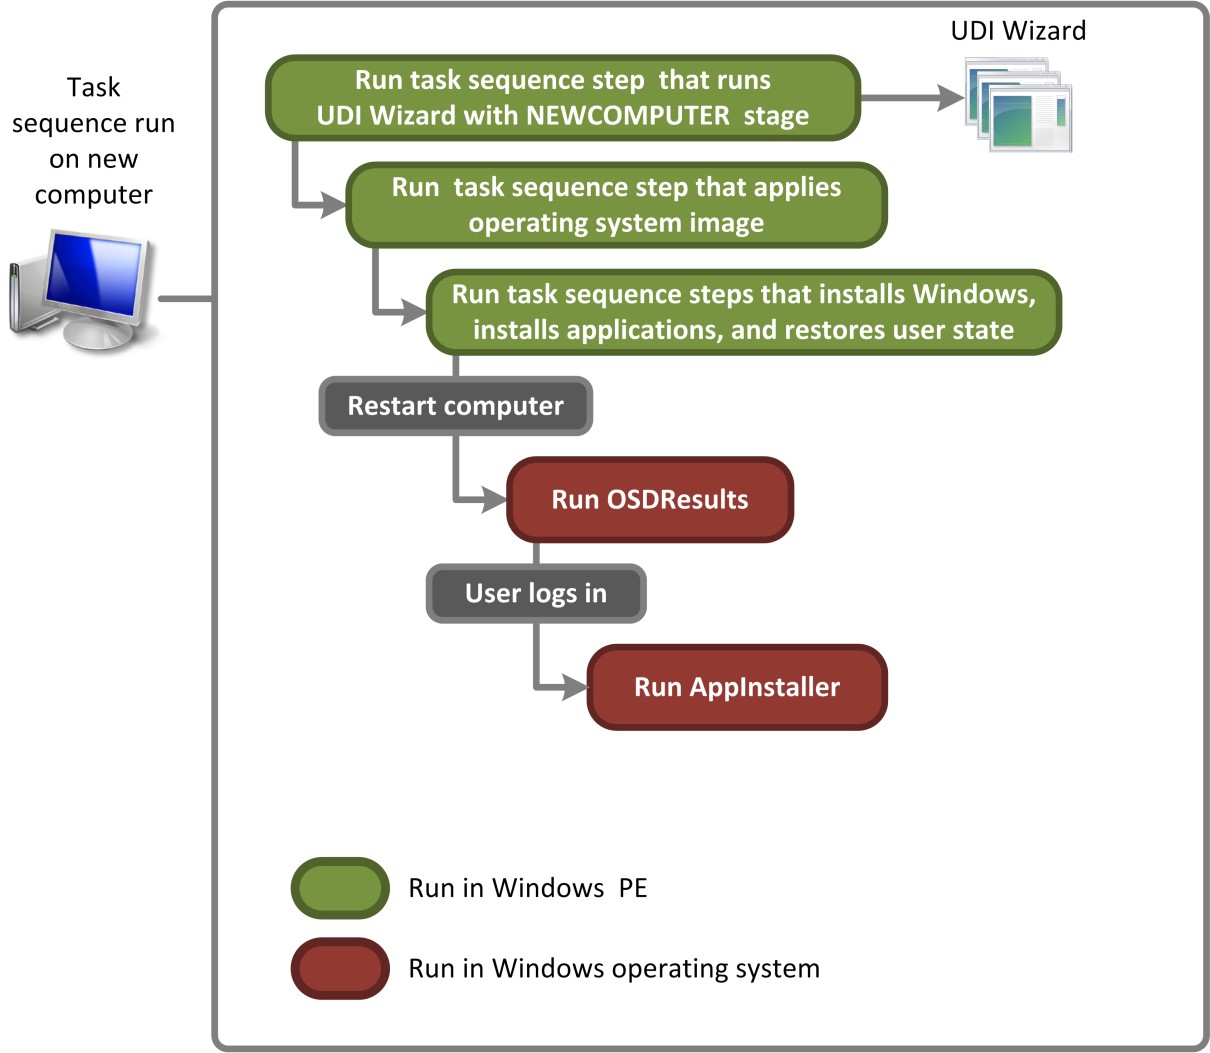 그림 2. 배포 지점에 저장된 이미지에 대한 새 컴퓨터 배포 시나리오를 수행하는 UDI에 대한 프로세스 흐름